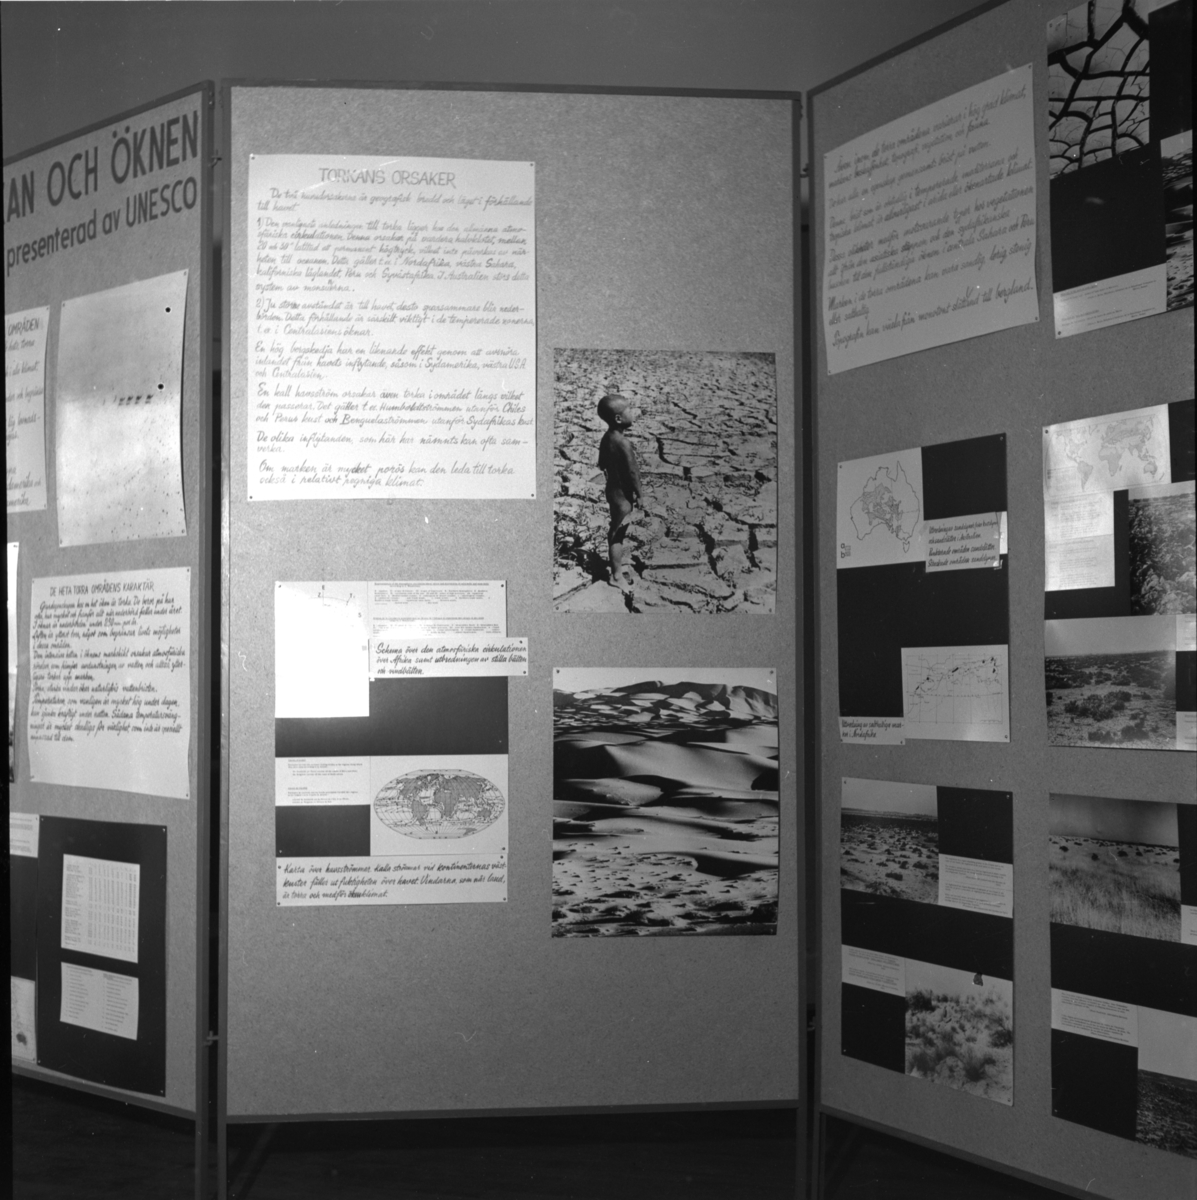 'Uställningen ''Människan och öknen - en utställning presenterad av UNESCO''. ::  :: Utställningsskärm med texter och bilder ''Människan och öknen'' och ''Torkans orsaker''. ::  :: Ingår i serie med fotonr. 6984:1-18.'